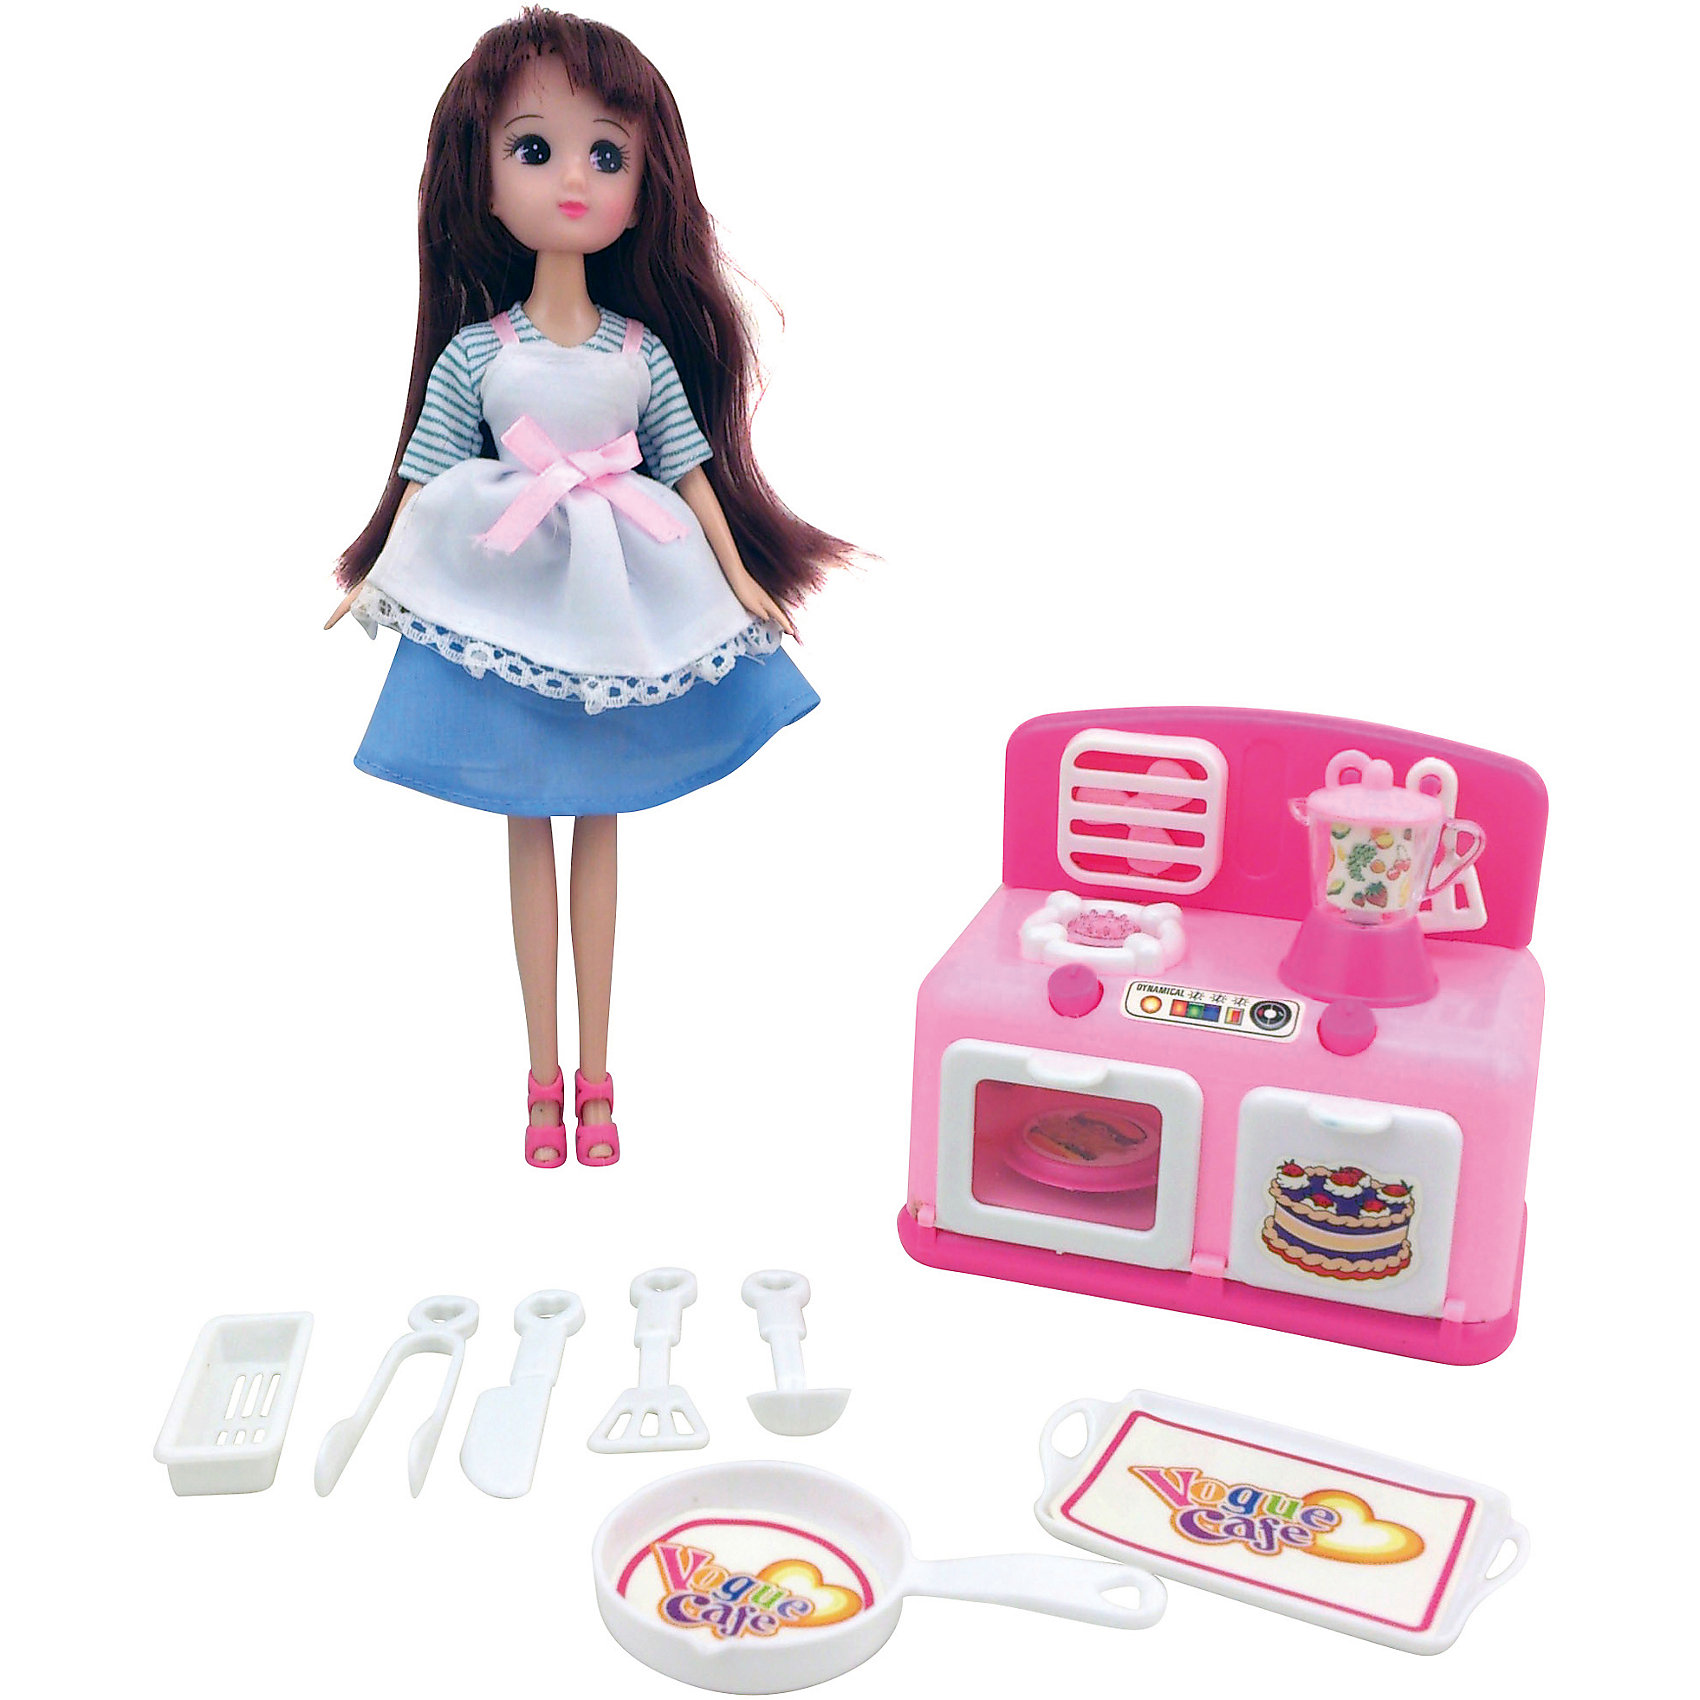 Игровой набор Кукла, плита, кухонные принадлежности, Krutti 4985467